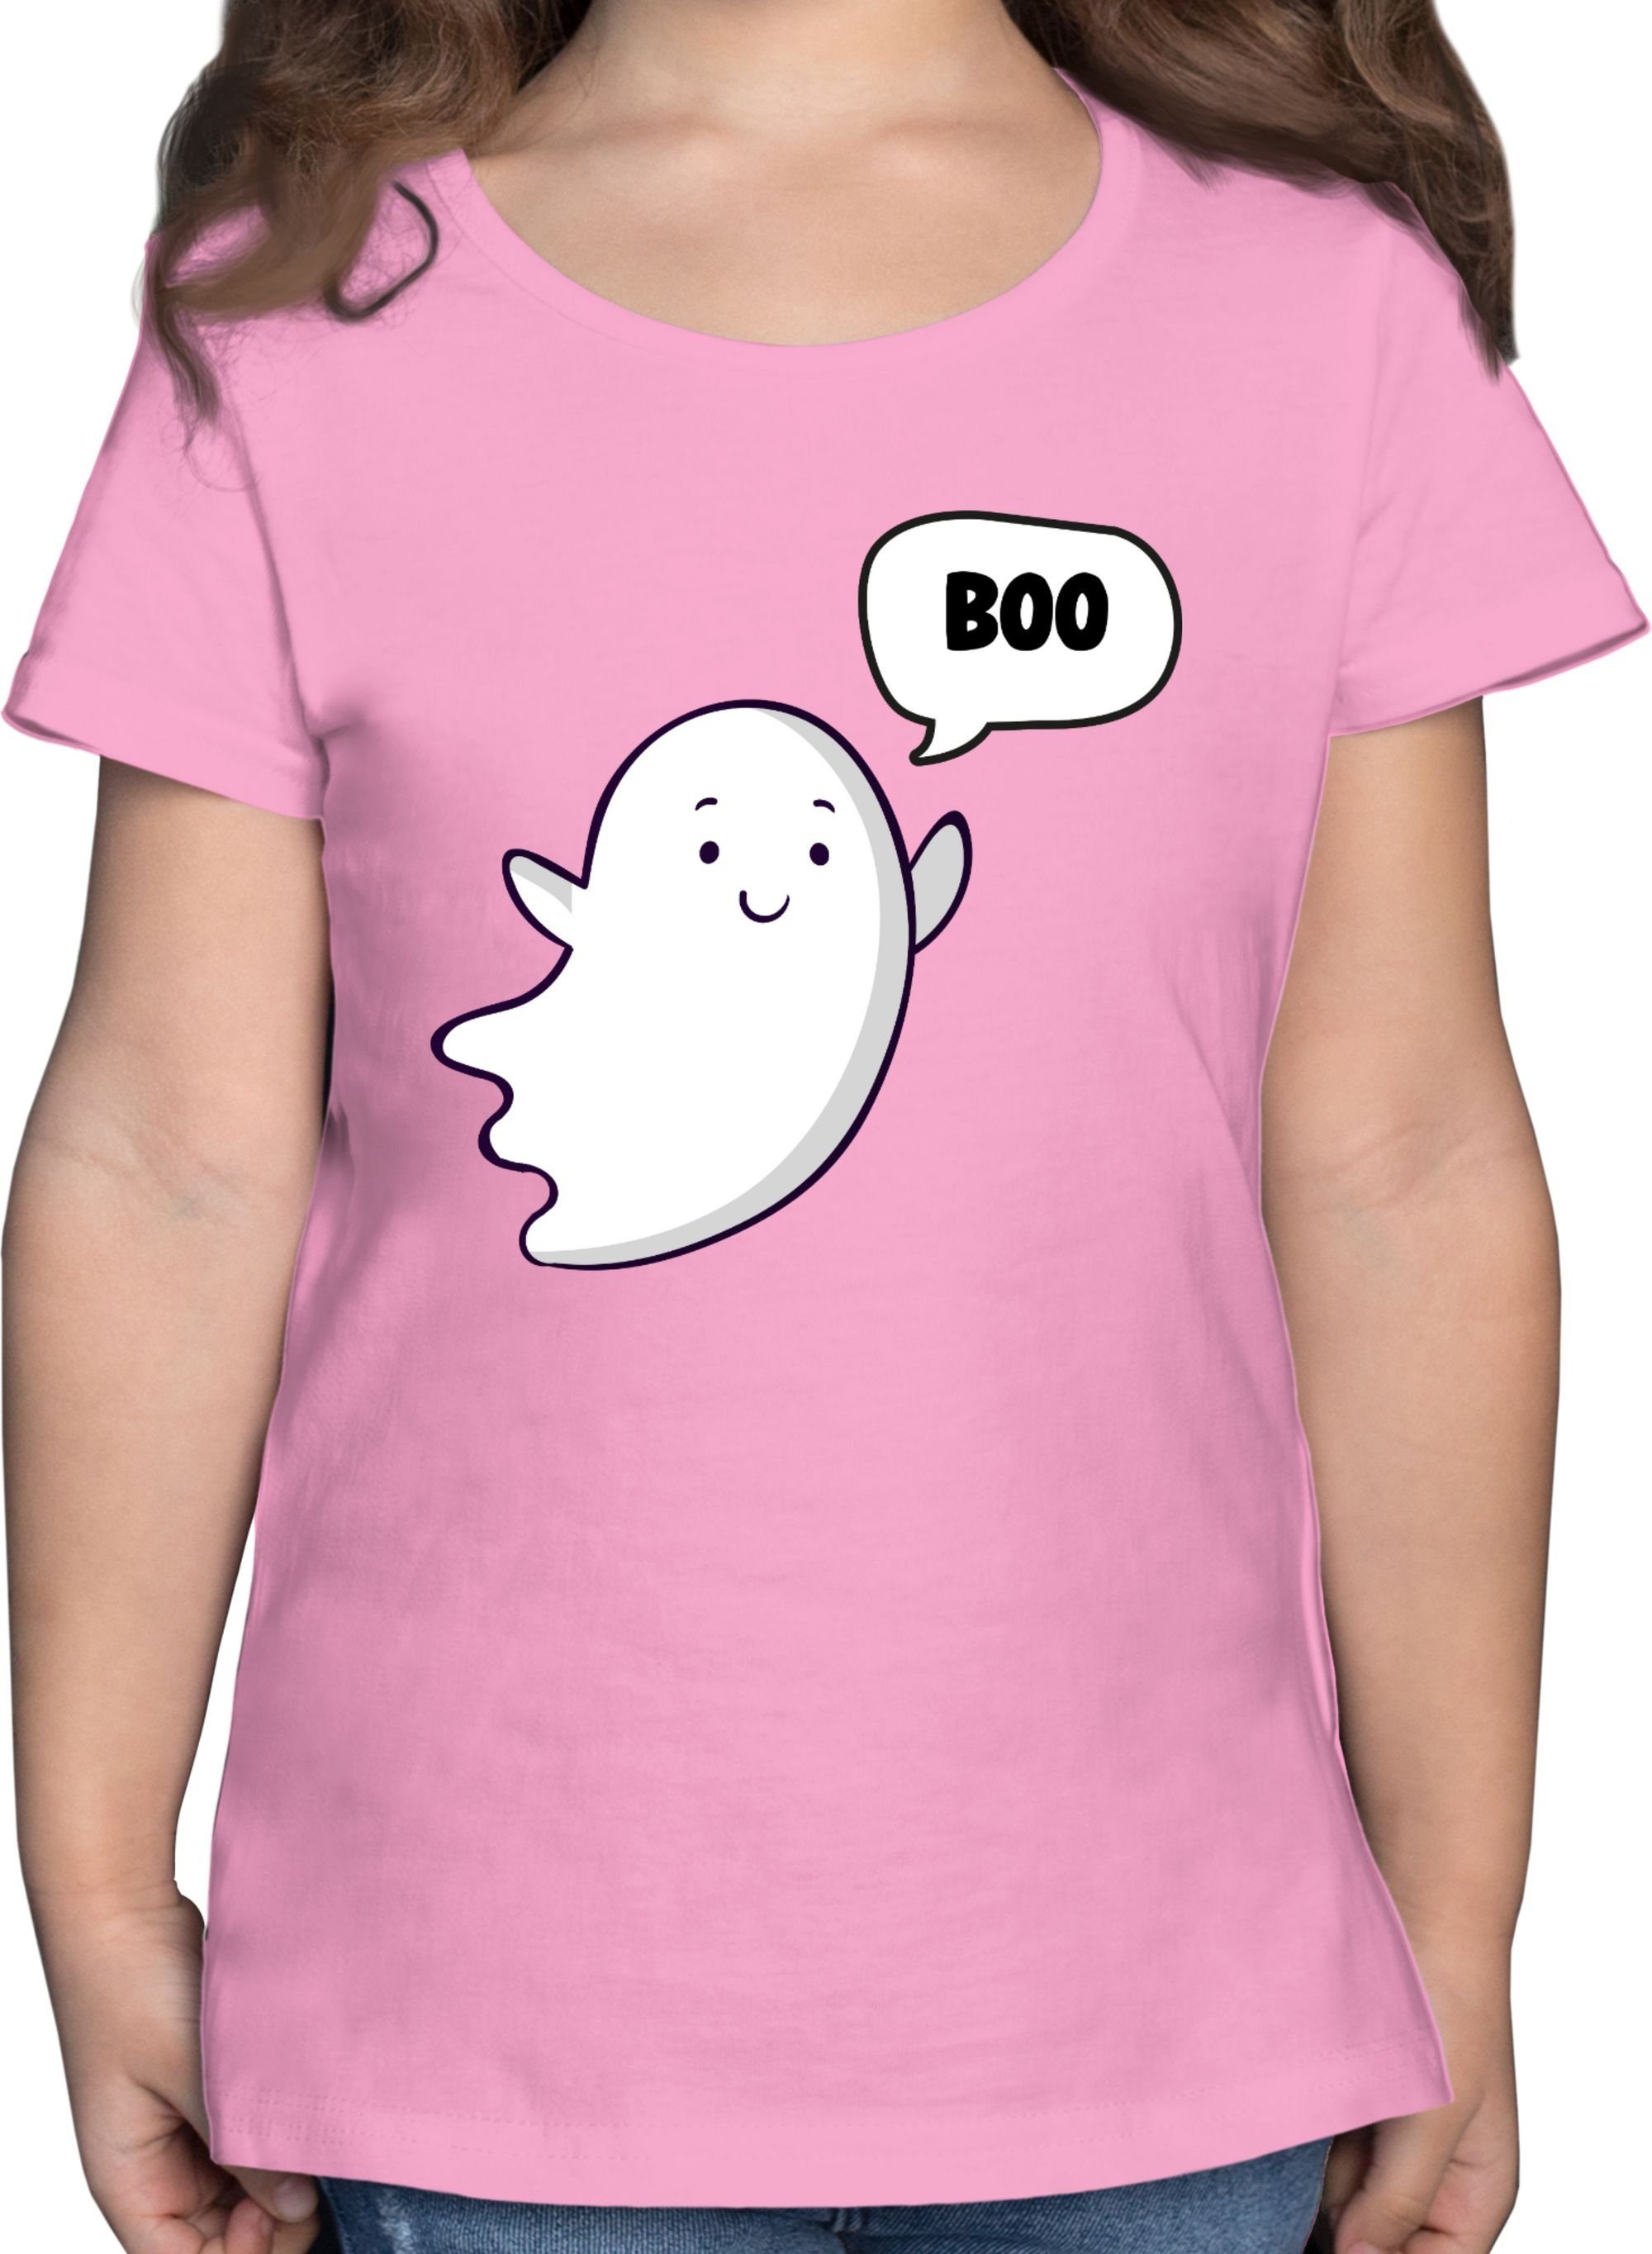 Shirtracer T-Shirt Süßer kleiner Geist Geister Gespenst Ghost Halloween Kostüme für Kinder 02 Rosa